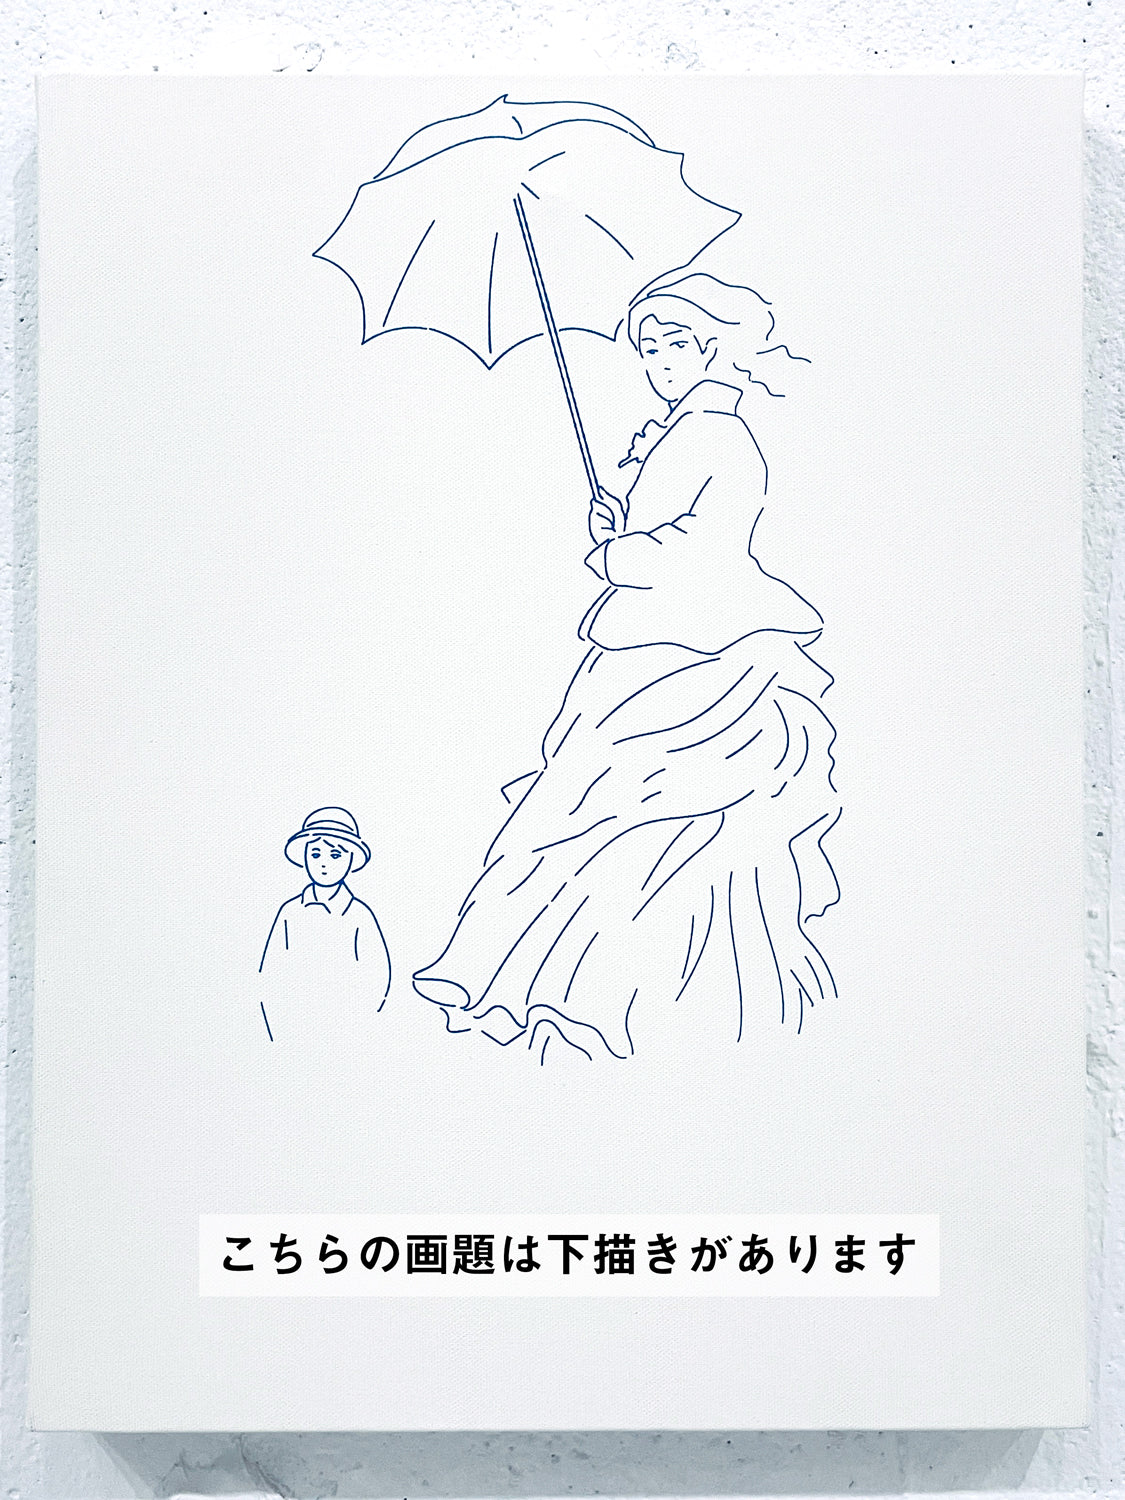 【日本橋】2月25日 (日) 14:00-17:00 | クロード・モネ | 散歩、日傘をさす女性 *下描きあり (Woman with a Parasol by Claude Monet *canvas drafted at Nihon-bashi)